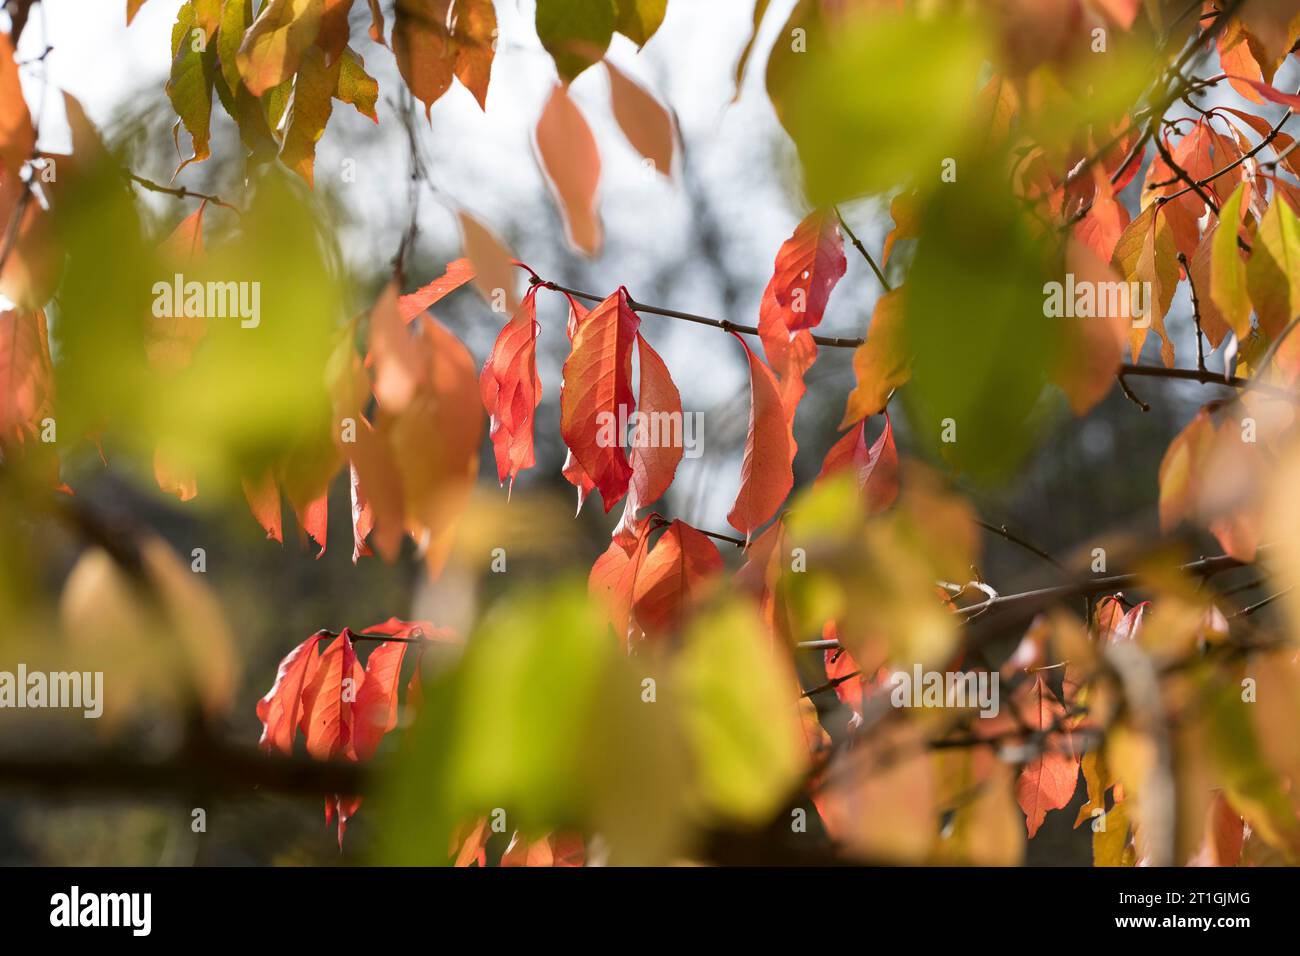 European spindle-tree (Euonymus europaea, Euonymus europaeus), leaves in autumn, Germany Stock Photo